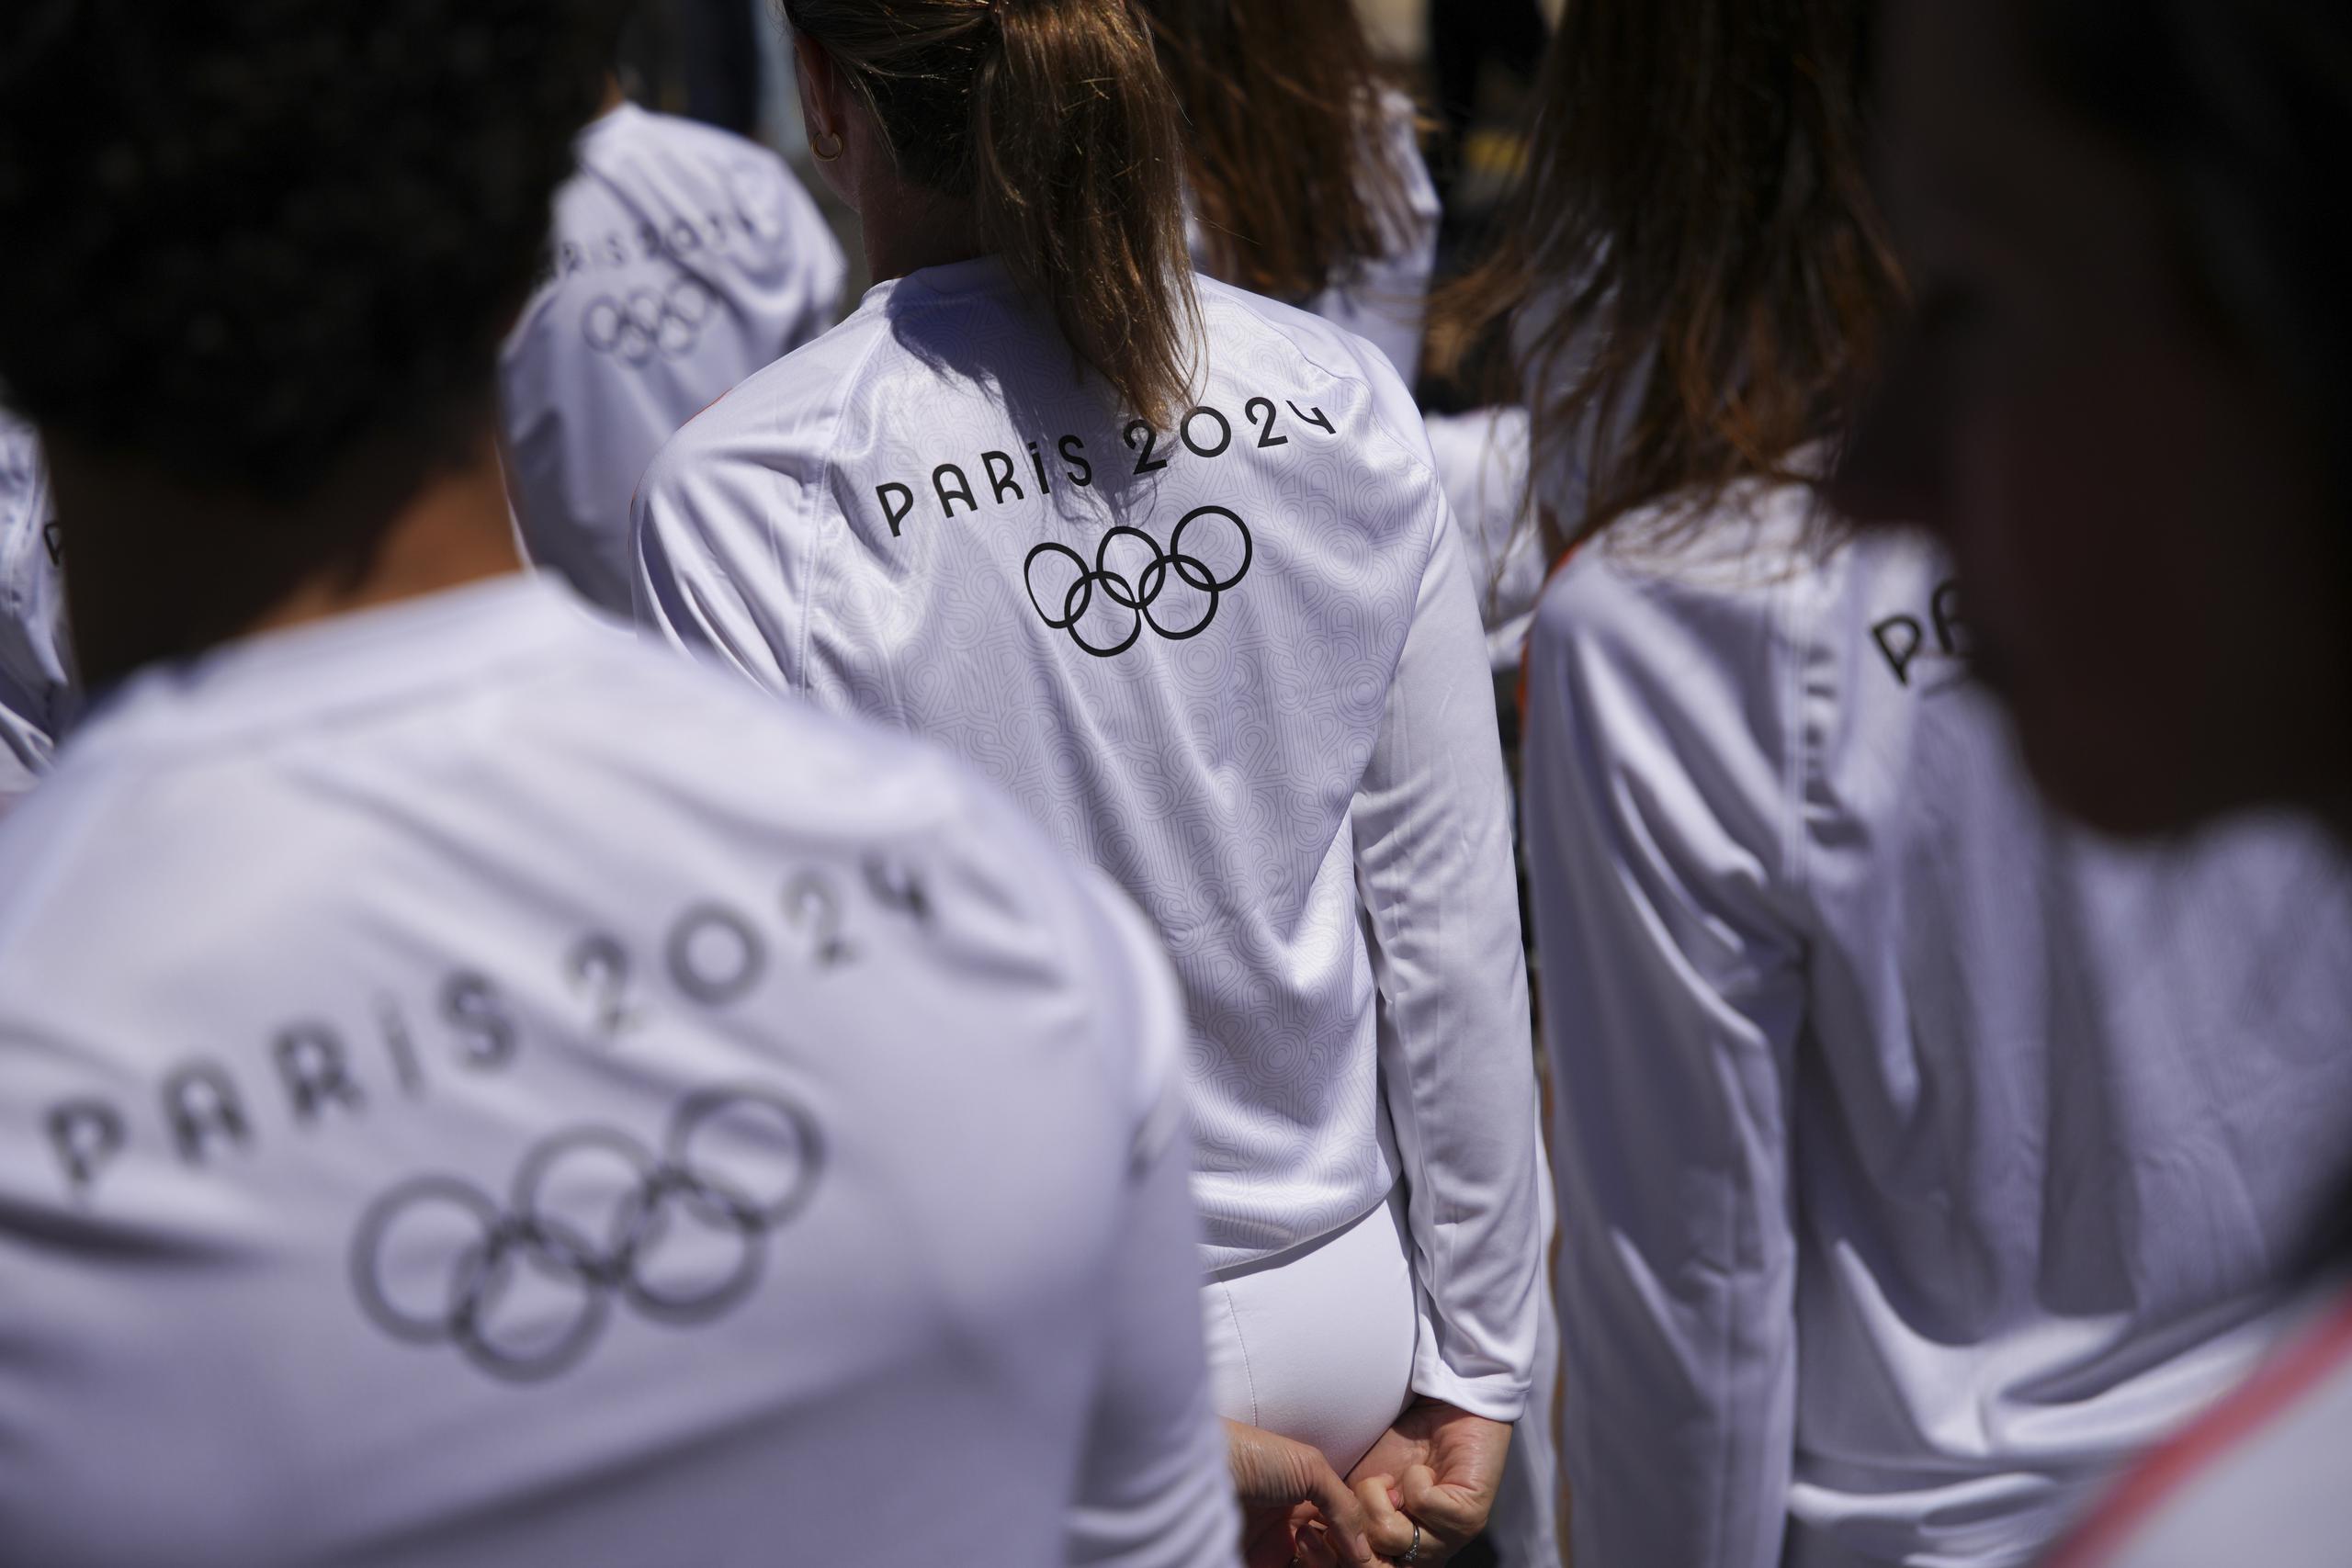 Un grupo de personas que serían parte del relevo de la antorcha esperan su turno para transportar por un momento el fuego olímpico.